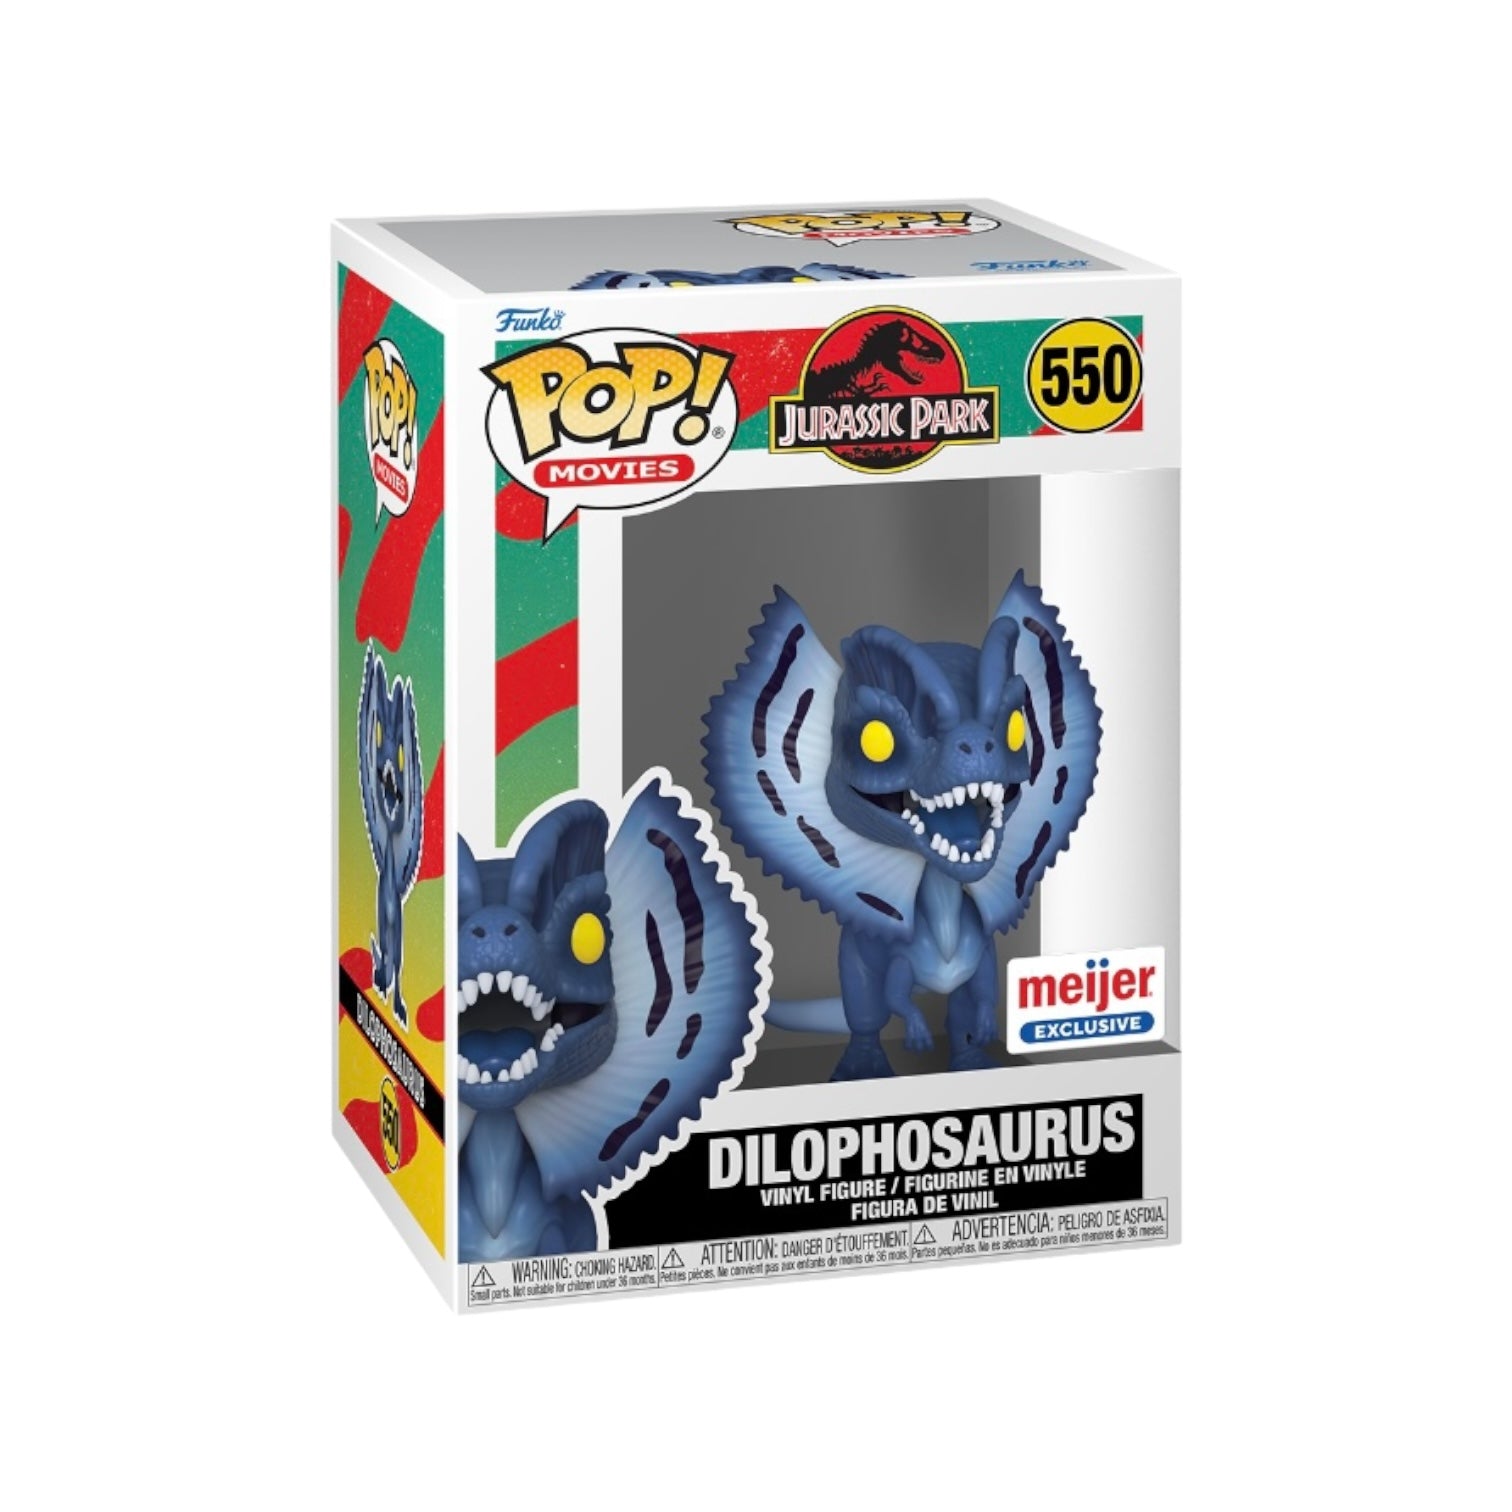 Dilophosaurus #550 (Moonlight) Funko Pop! - Jurassic Park - Meijer Exclusive